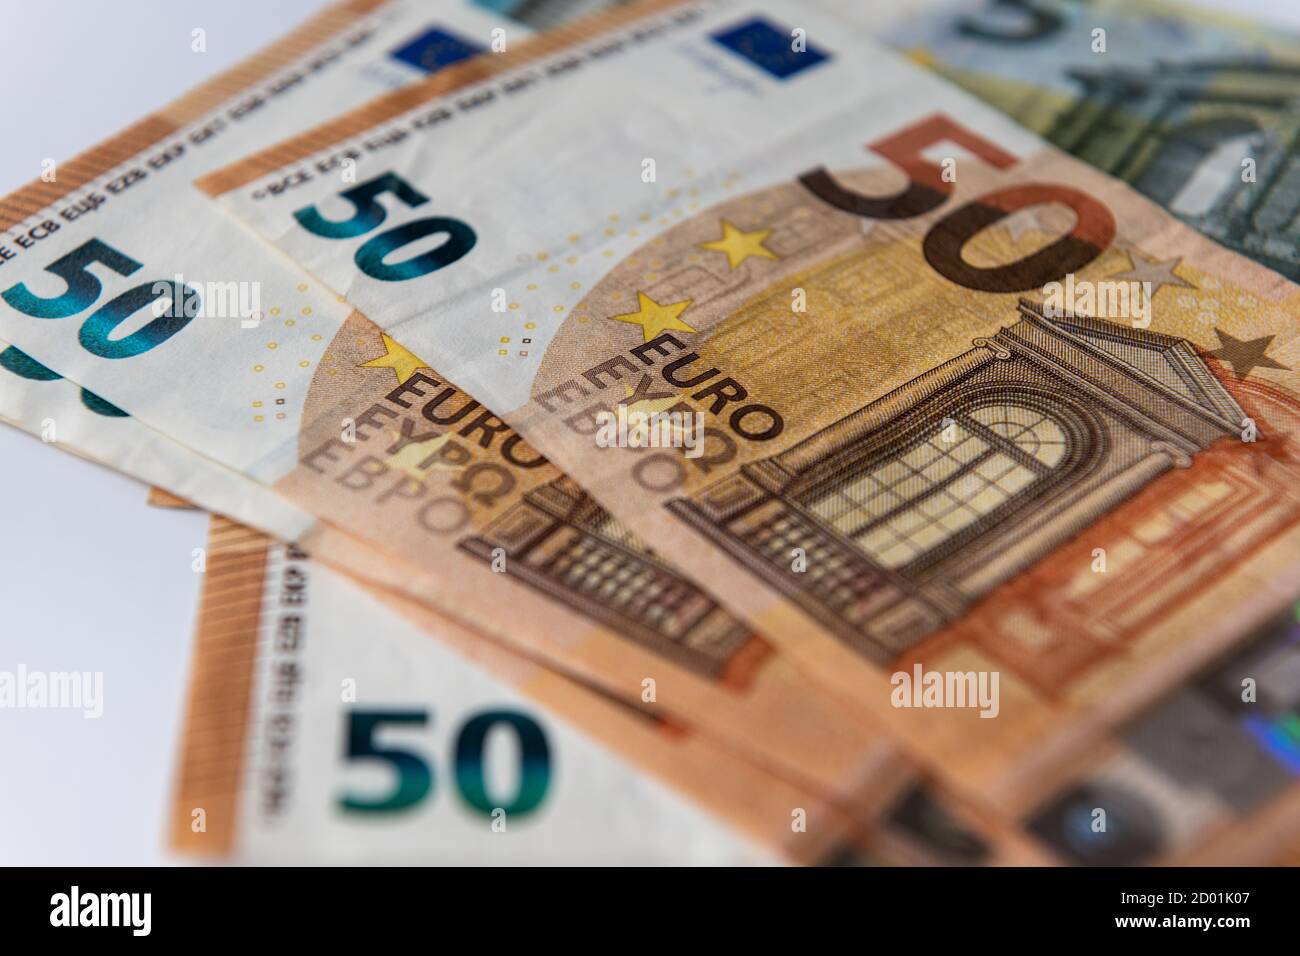 European Union bank notes Stock Photo - Alamy